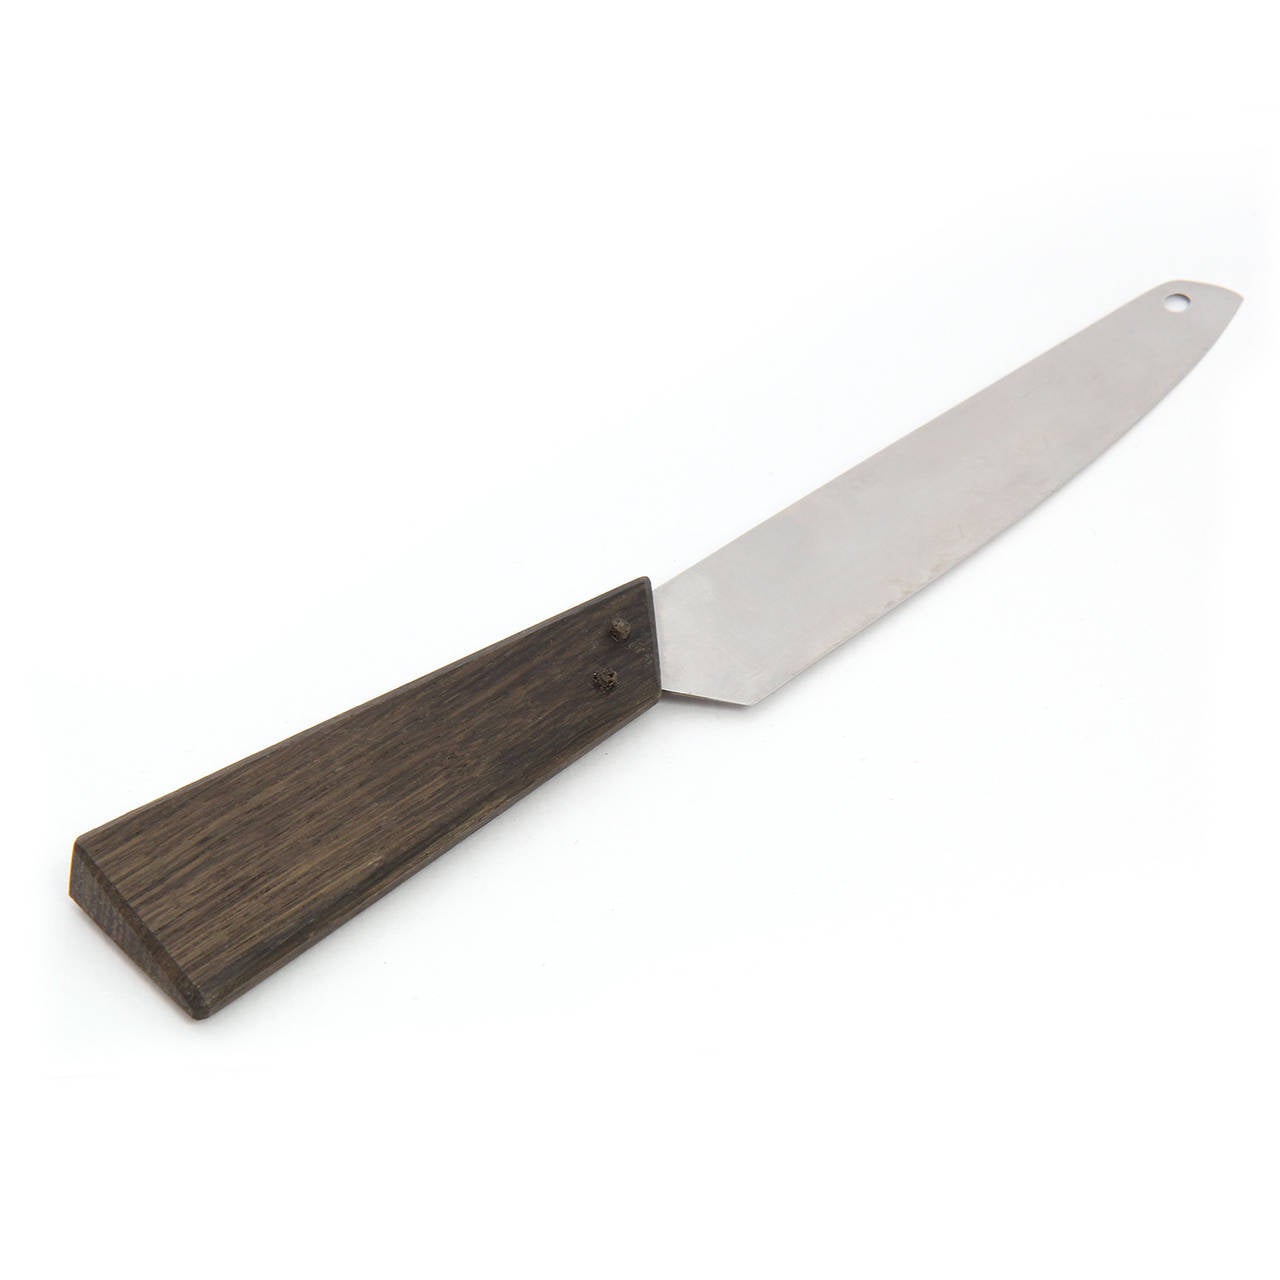 Steel Carving Knife by Tapio Wirkkala For Sale